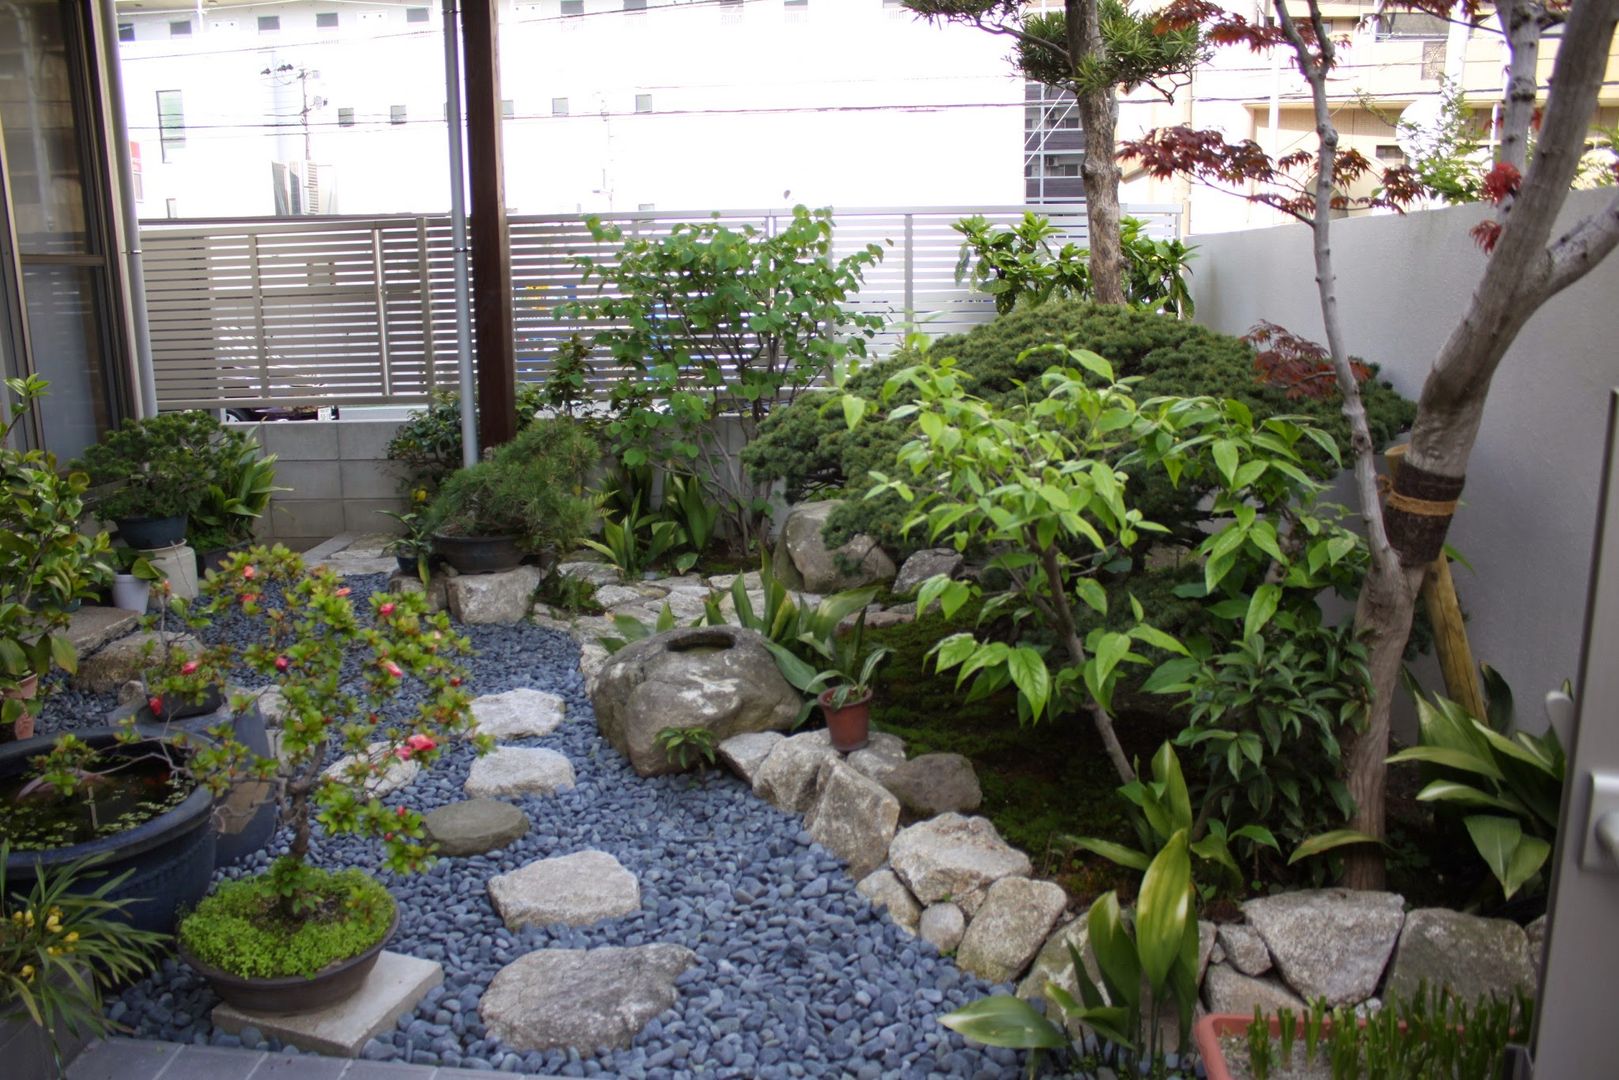 庭in福岡, 庭園空間ラボ teienkuukan Labo 庭園空間ラボ teienkuukan Labo Asian style garden